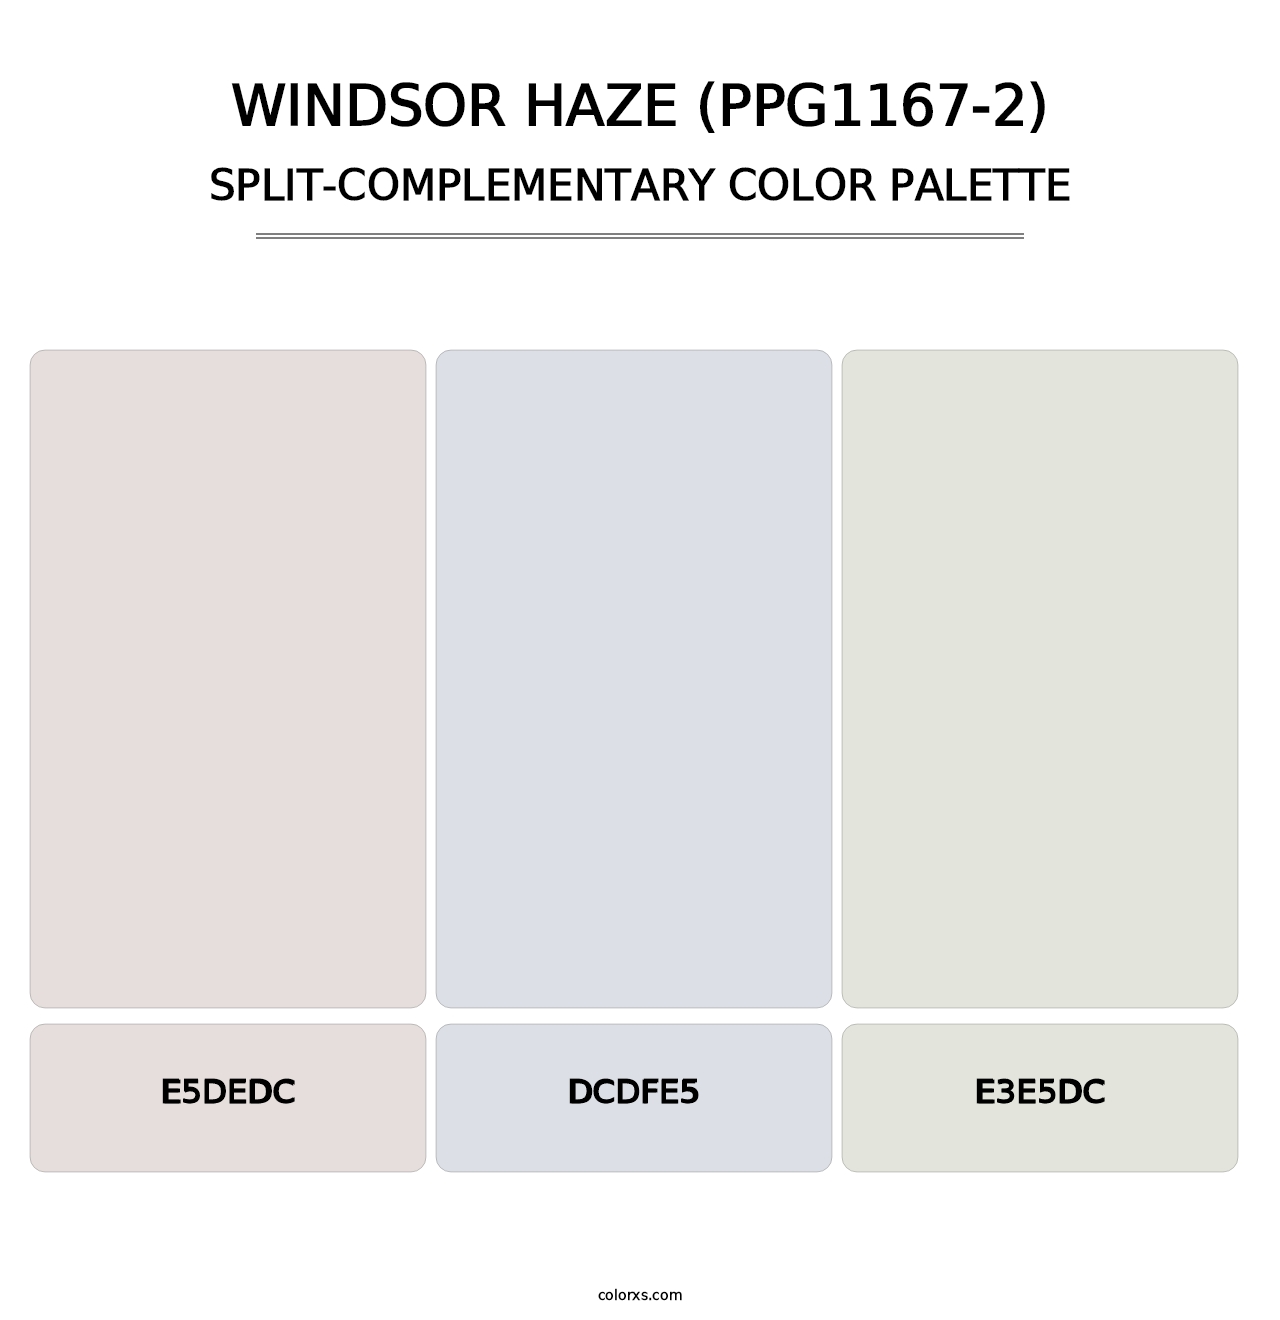 Windsor Haze (PPG1167-2) - Split-Complementary Color Palette